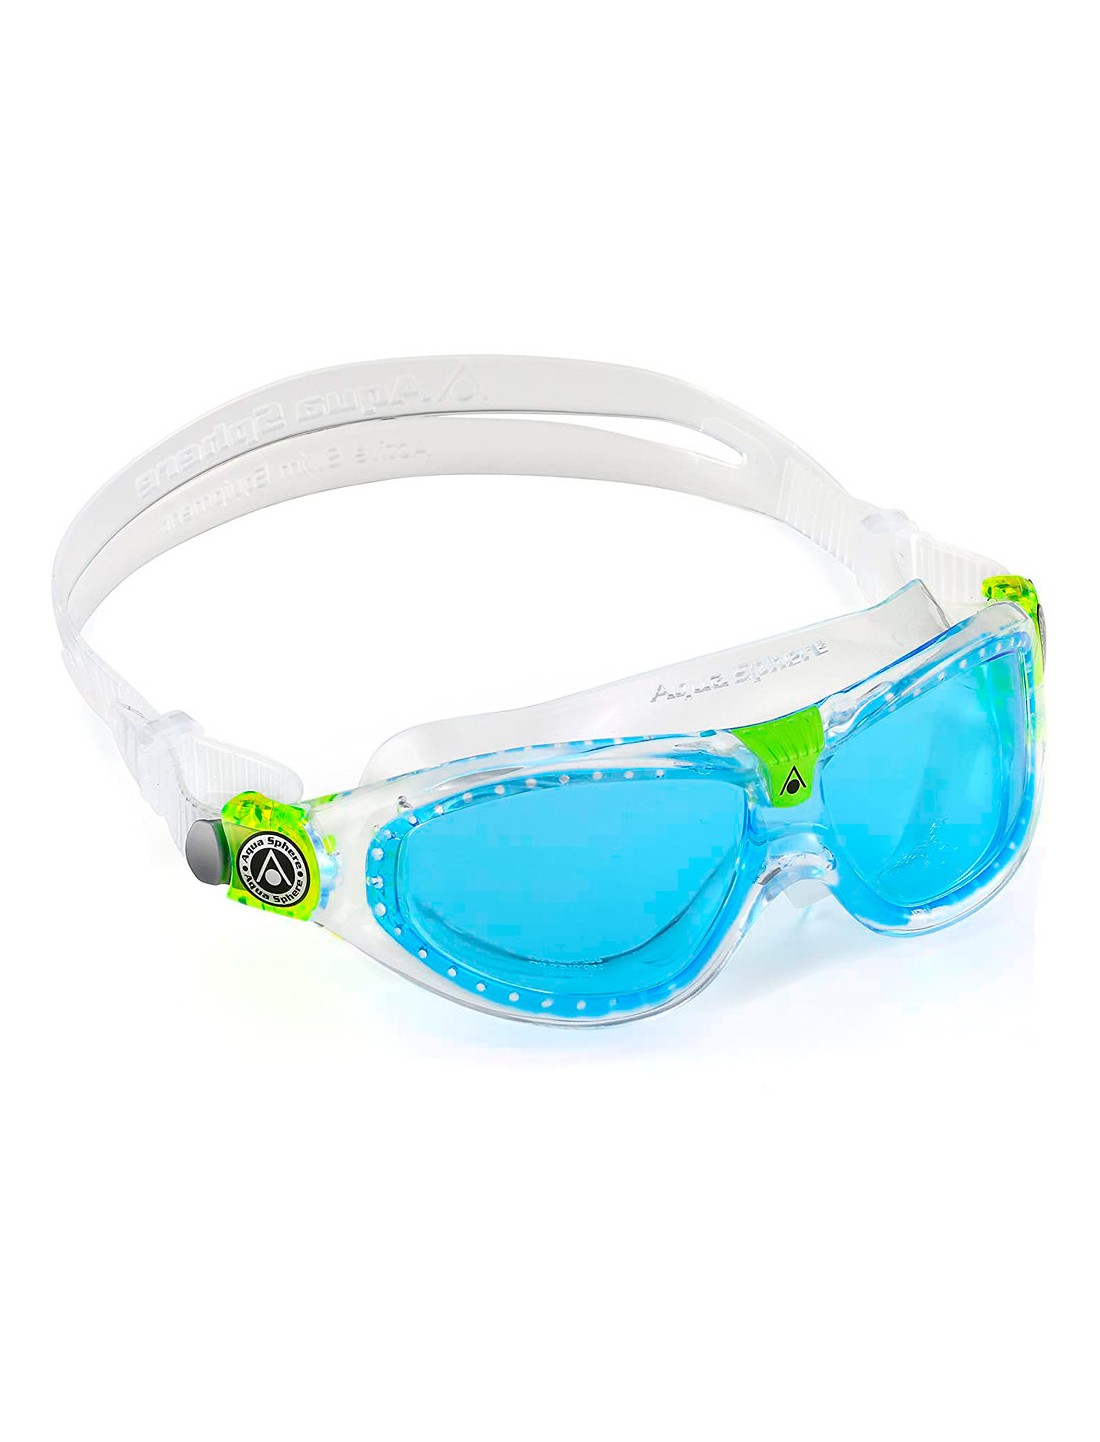 Gafas de natación Seal Kid 2 Cristal azul. Aqua Sphere